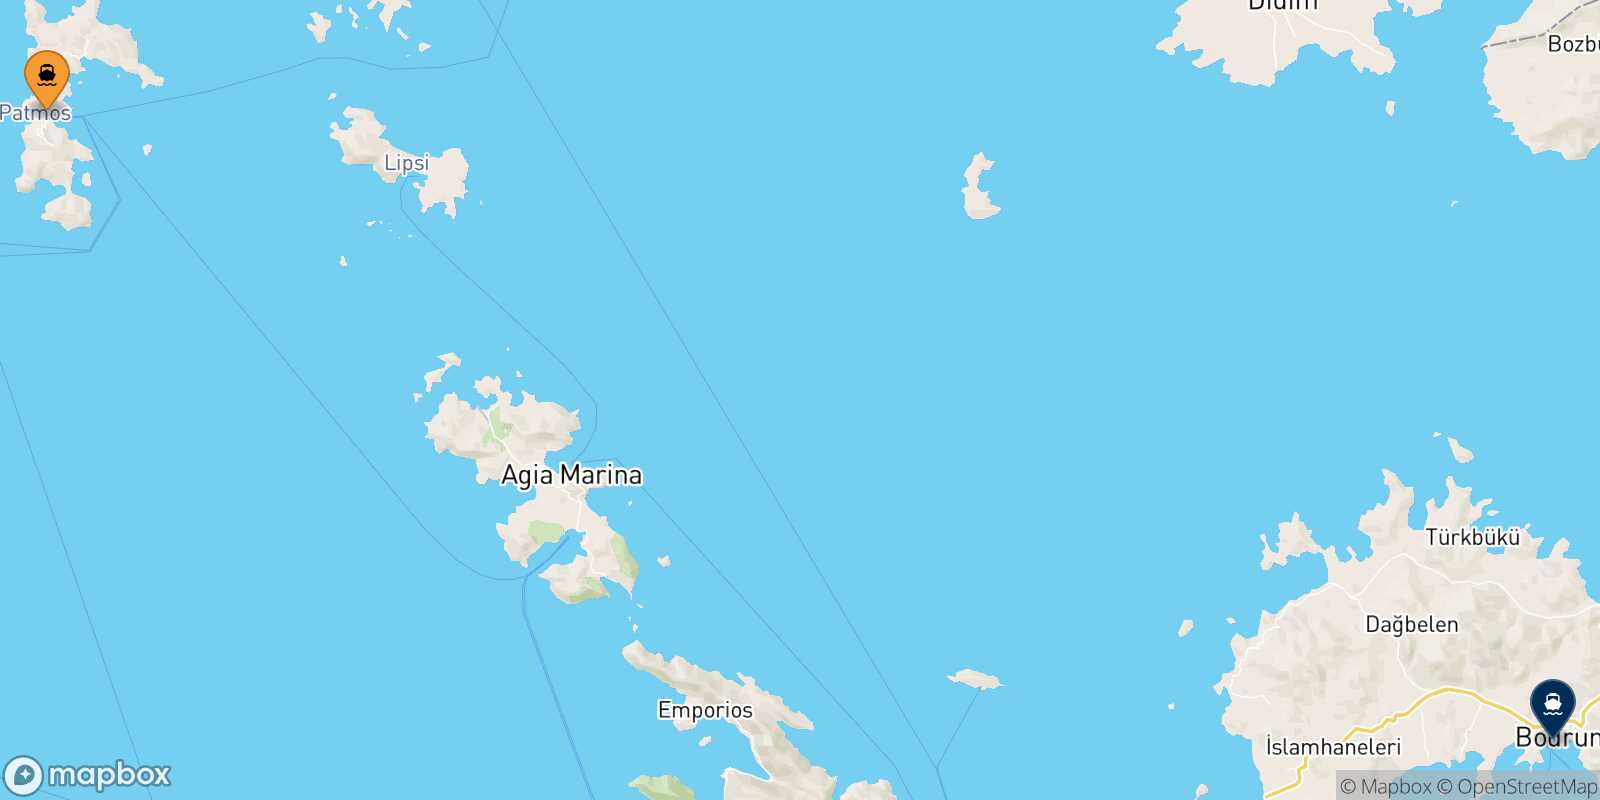 Mapa de la ruta Patmos Bodrum